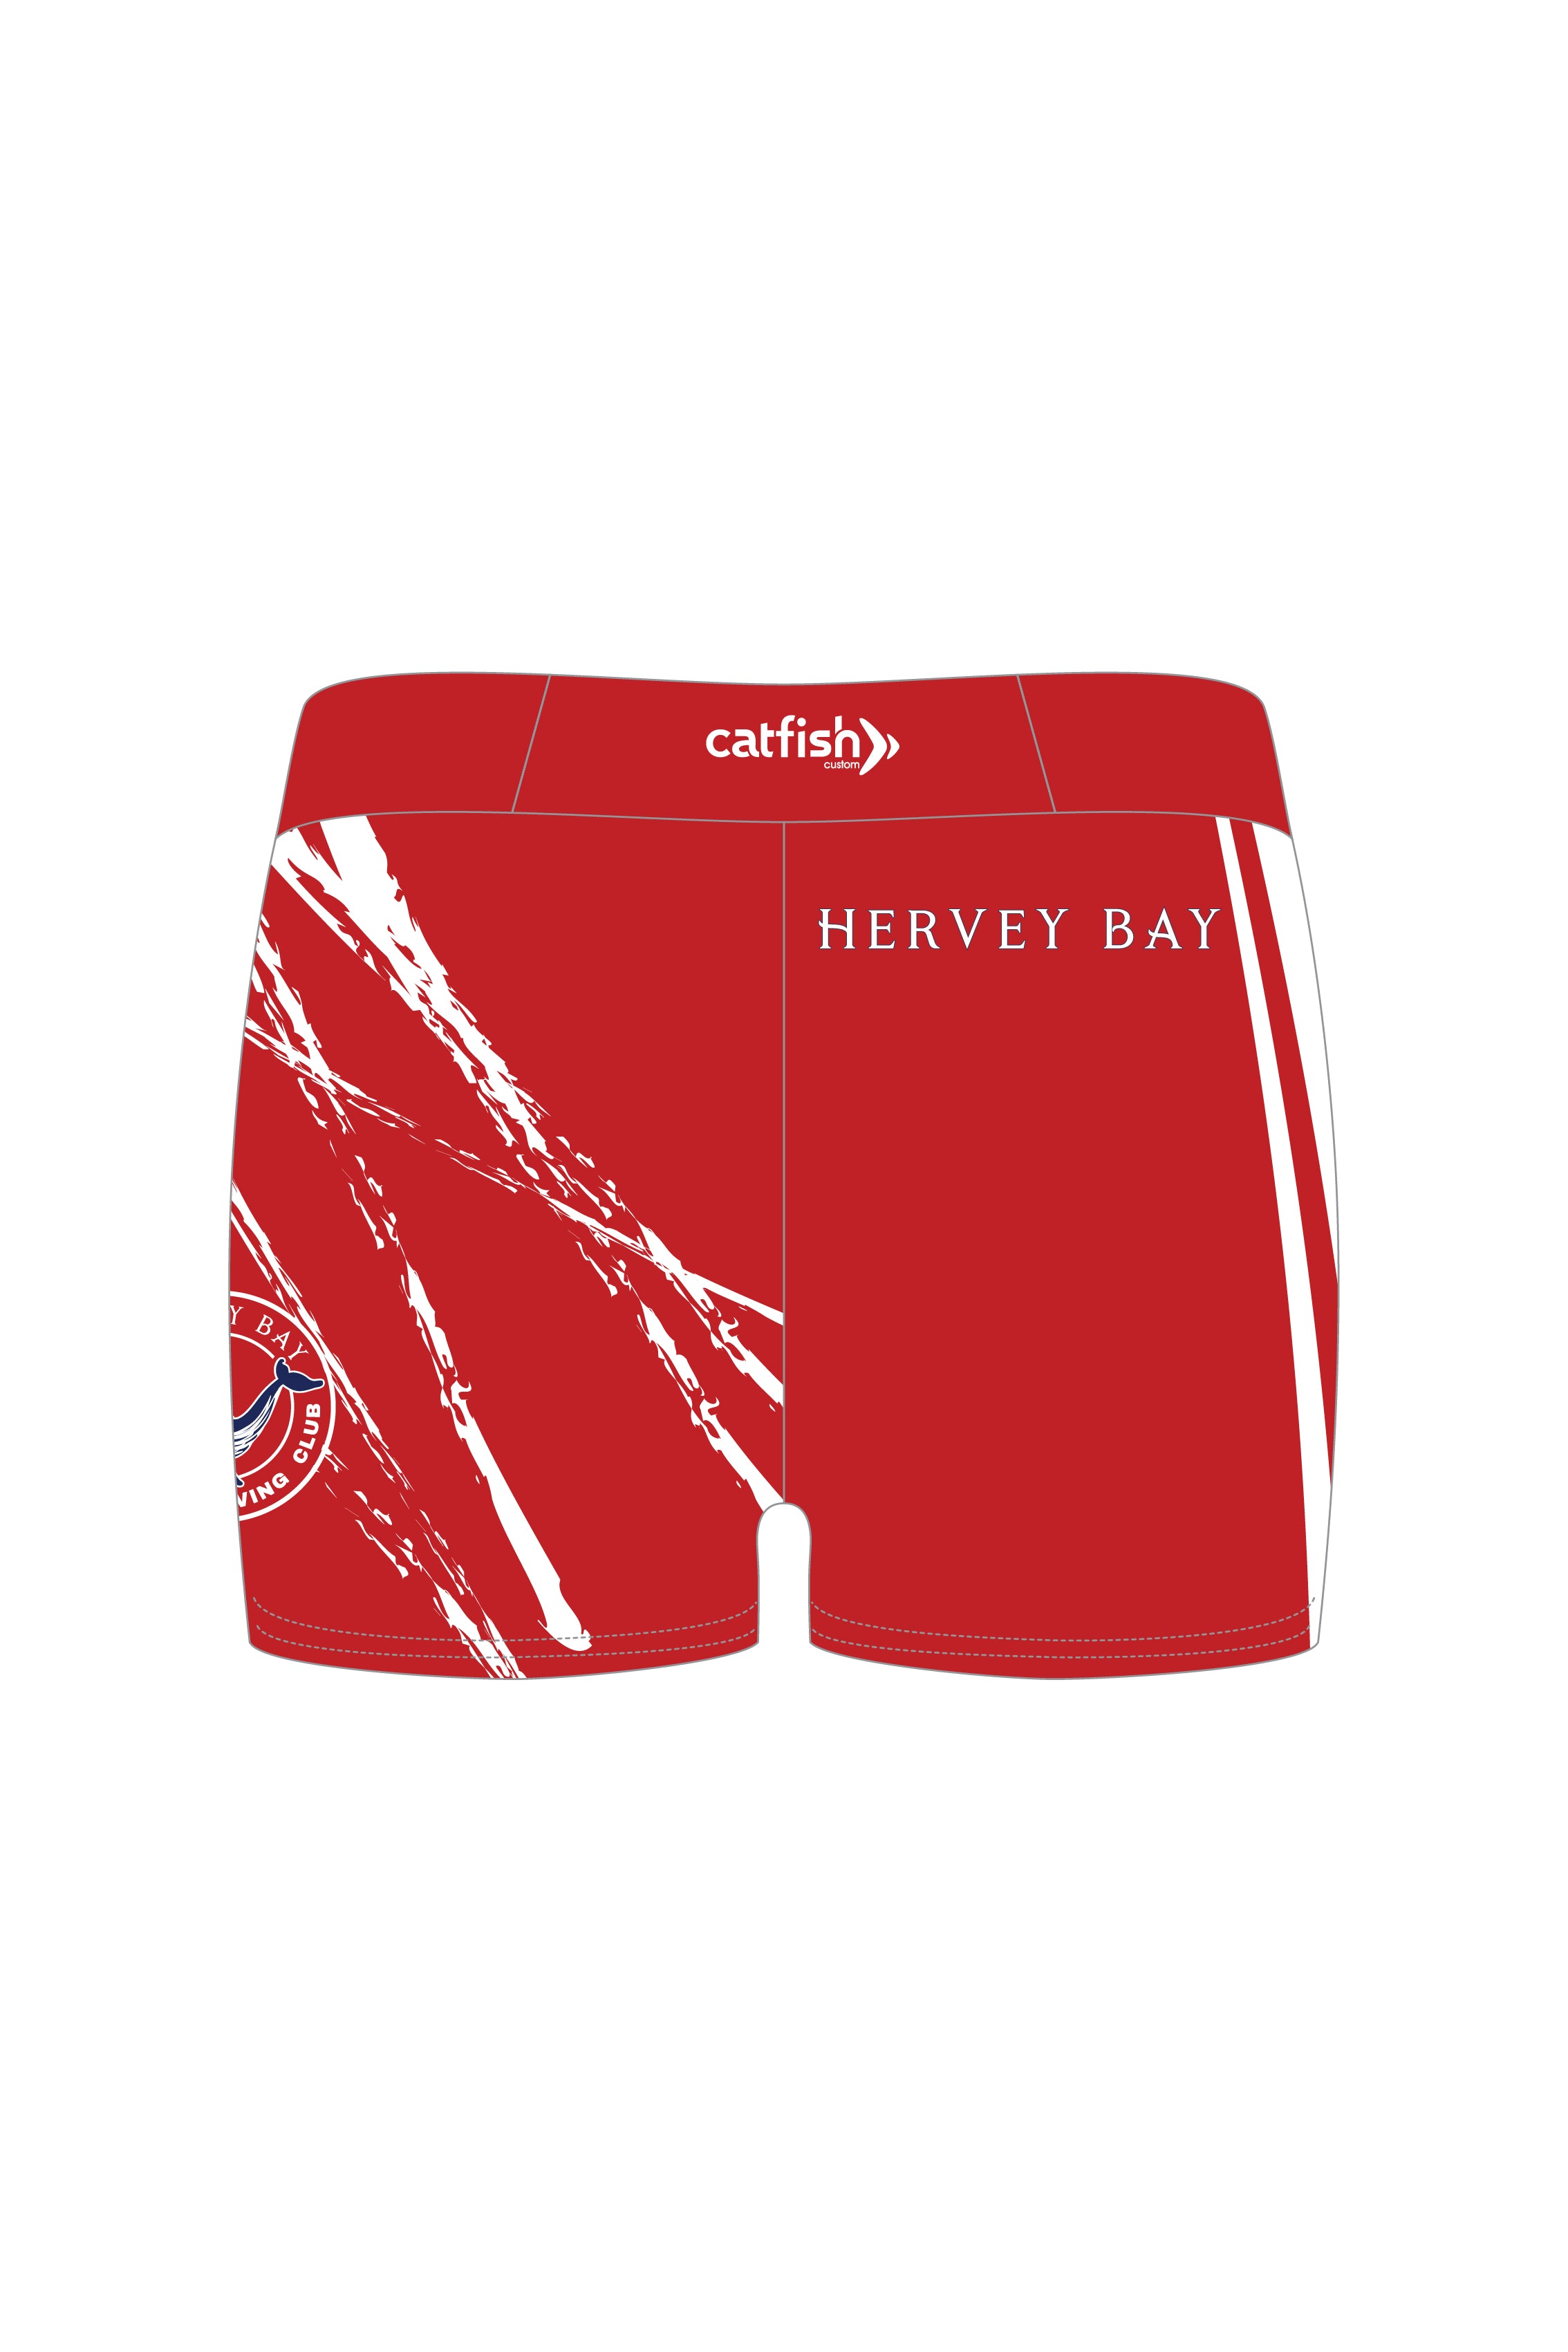 Hervey Bay Gym Shorts - Women's